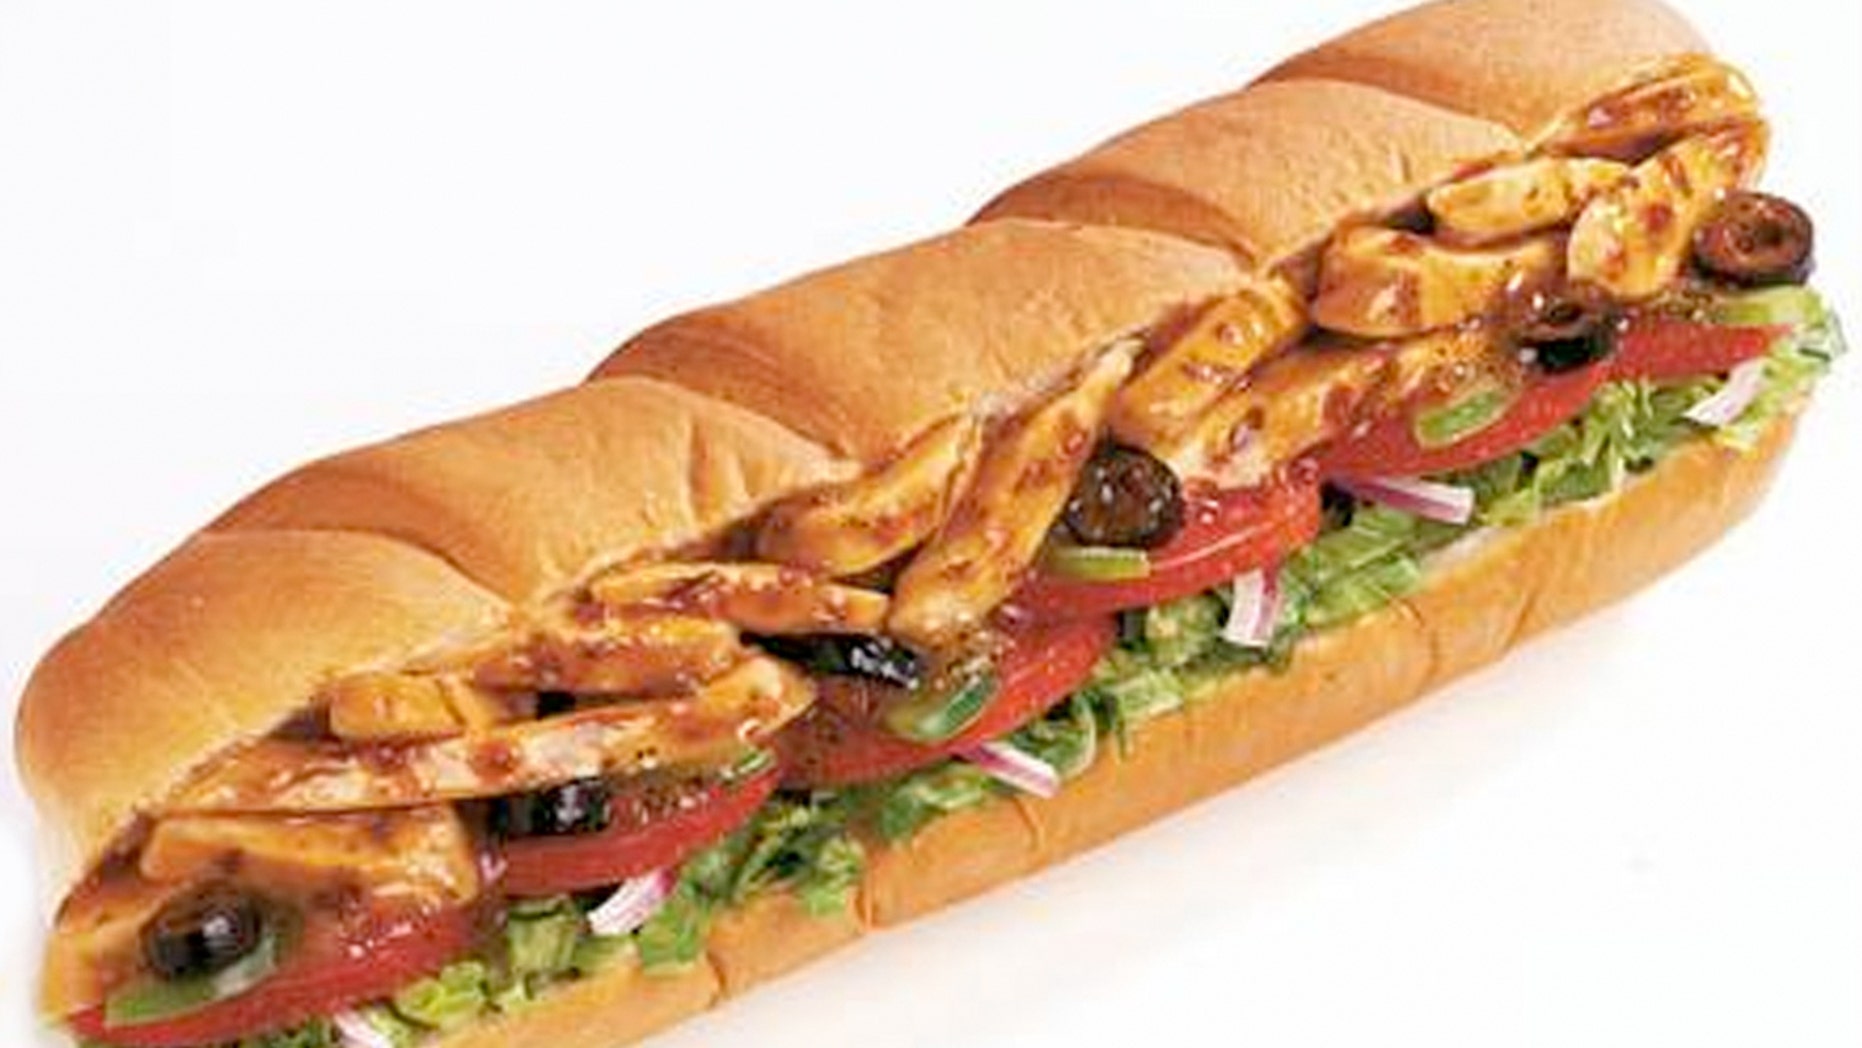 Subway will now measure sandwich bread following 'footlong' lawsuit